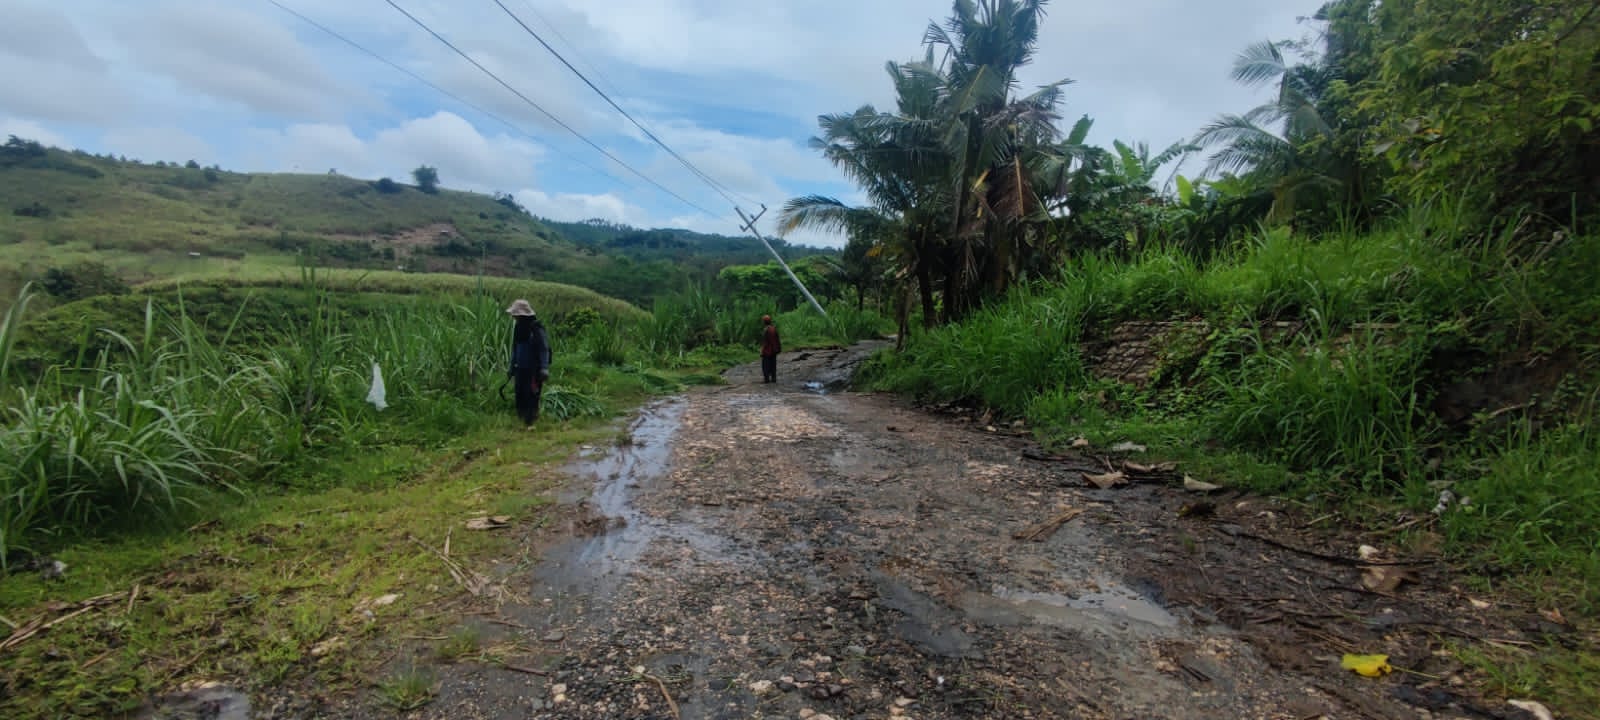 Bencana Jalan Ambles Di Dusun Kedungbiru